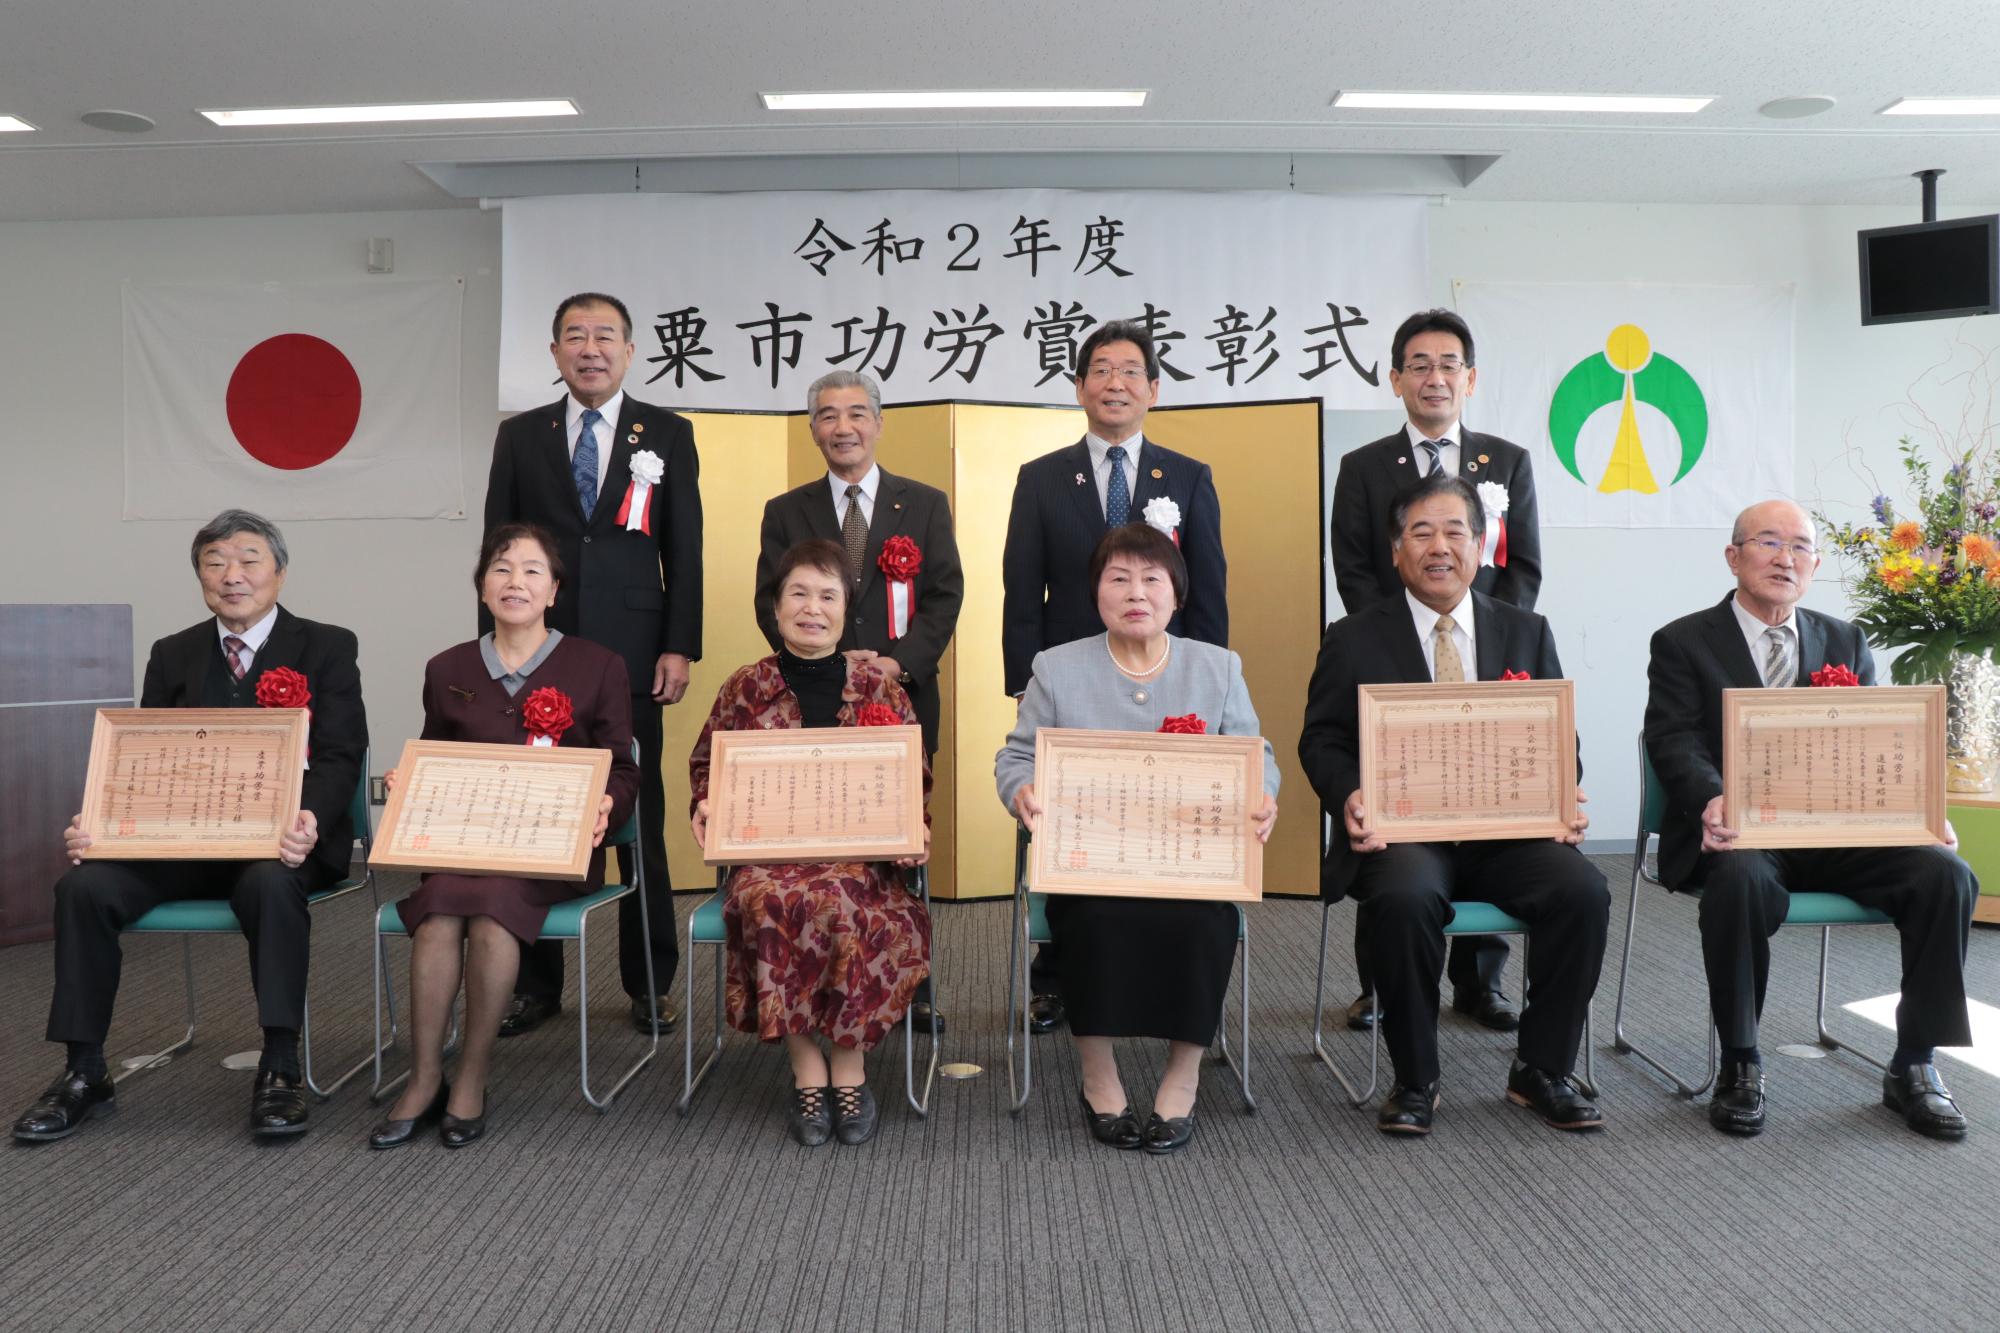 表彰会場で受章者6名の後ろに右から西岡教育長、東議長、福元市長、中村副市長が並ぶ写真